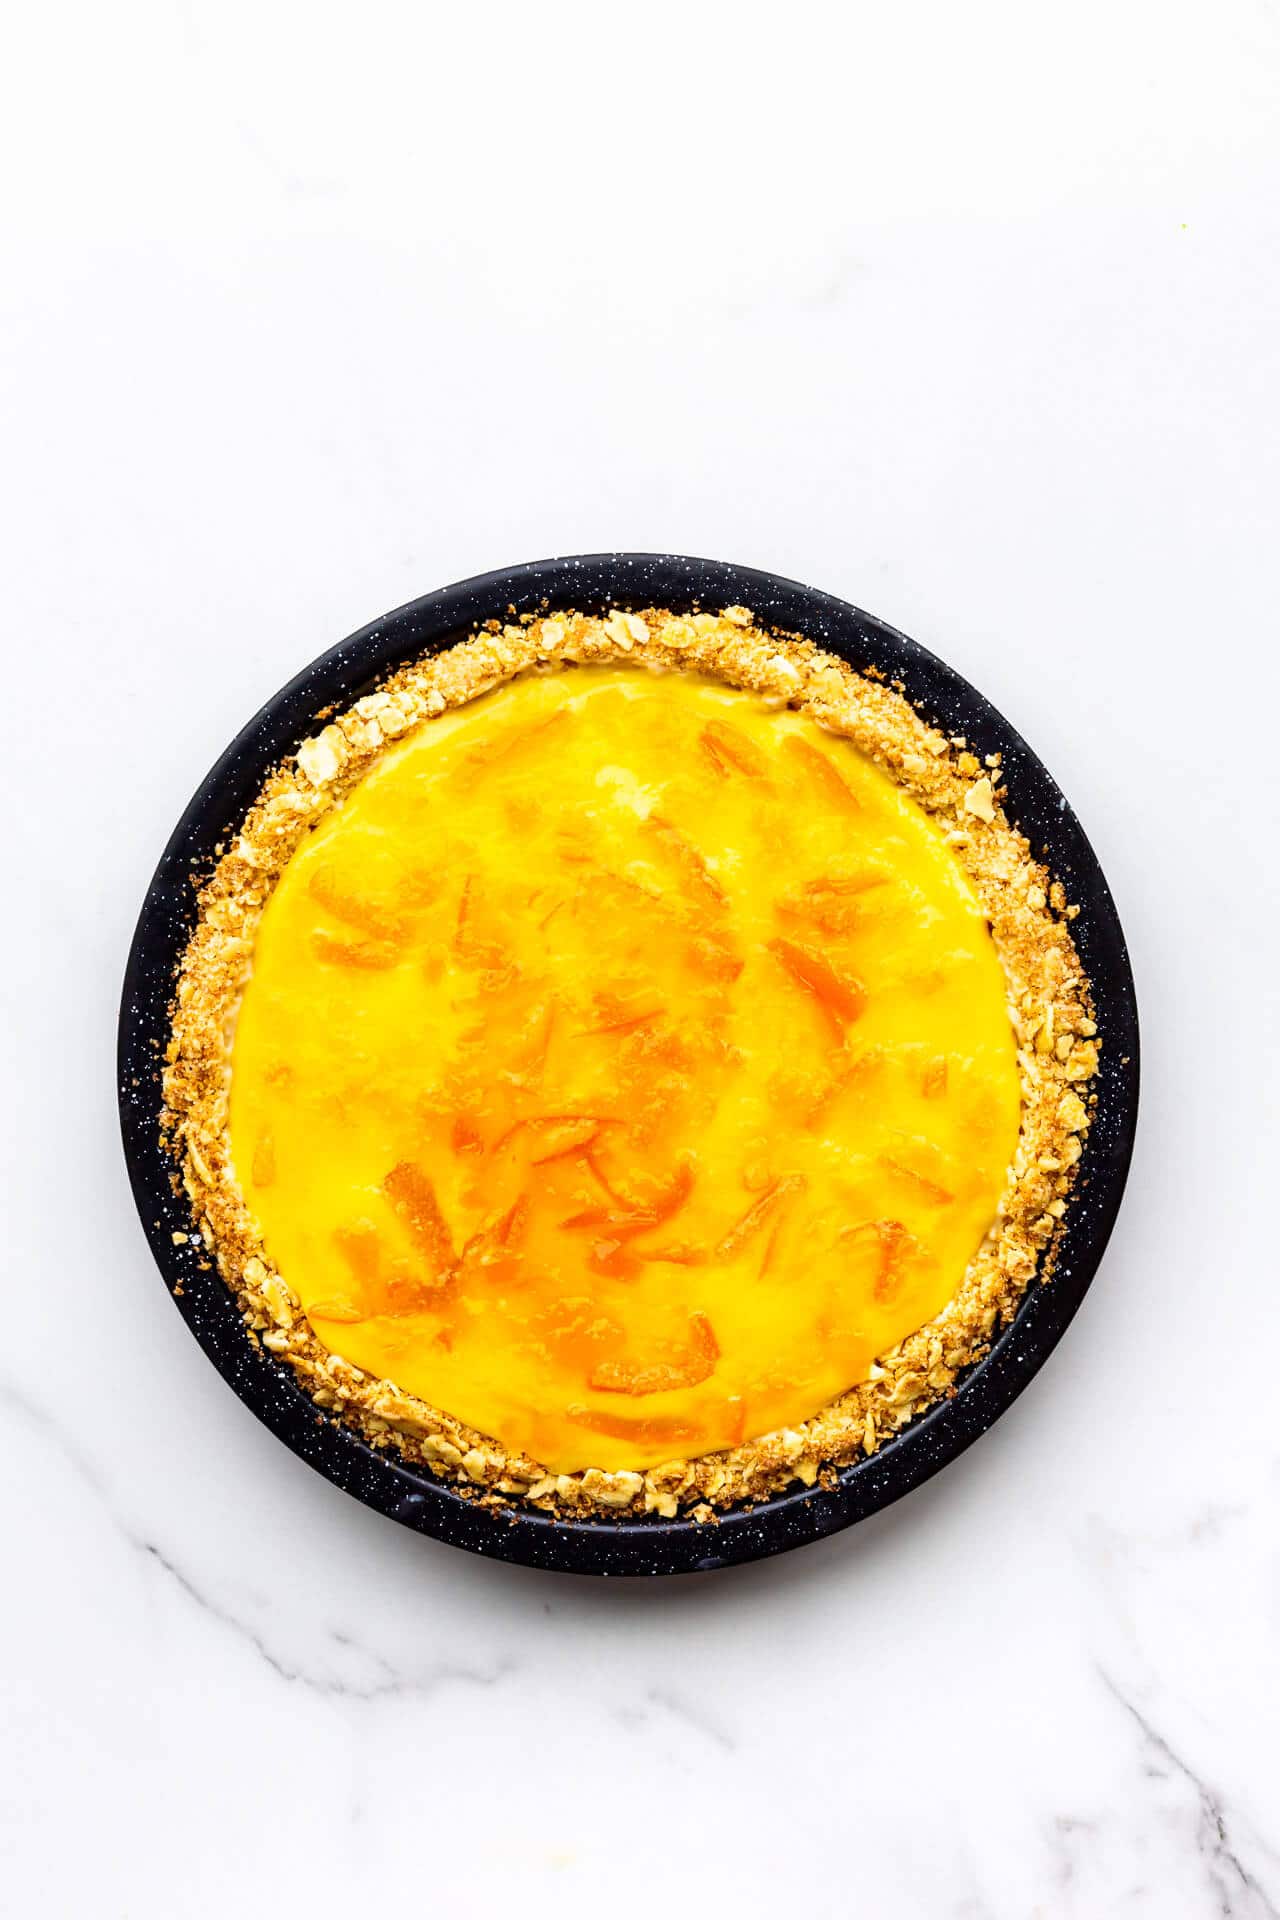 Orange pie glazed with orange marmalade.